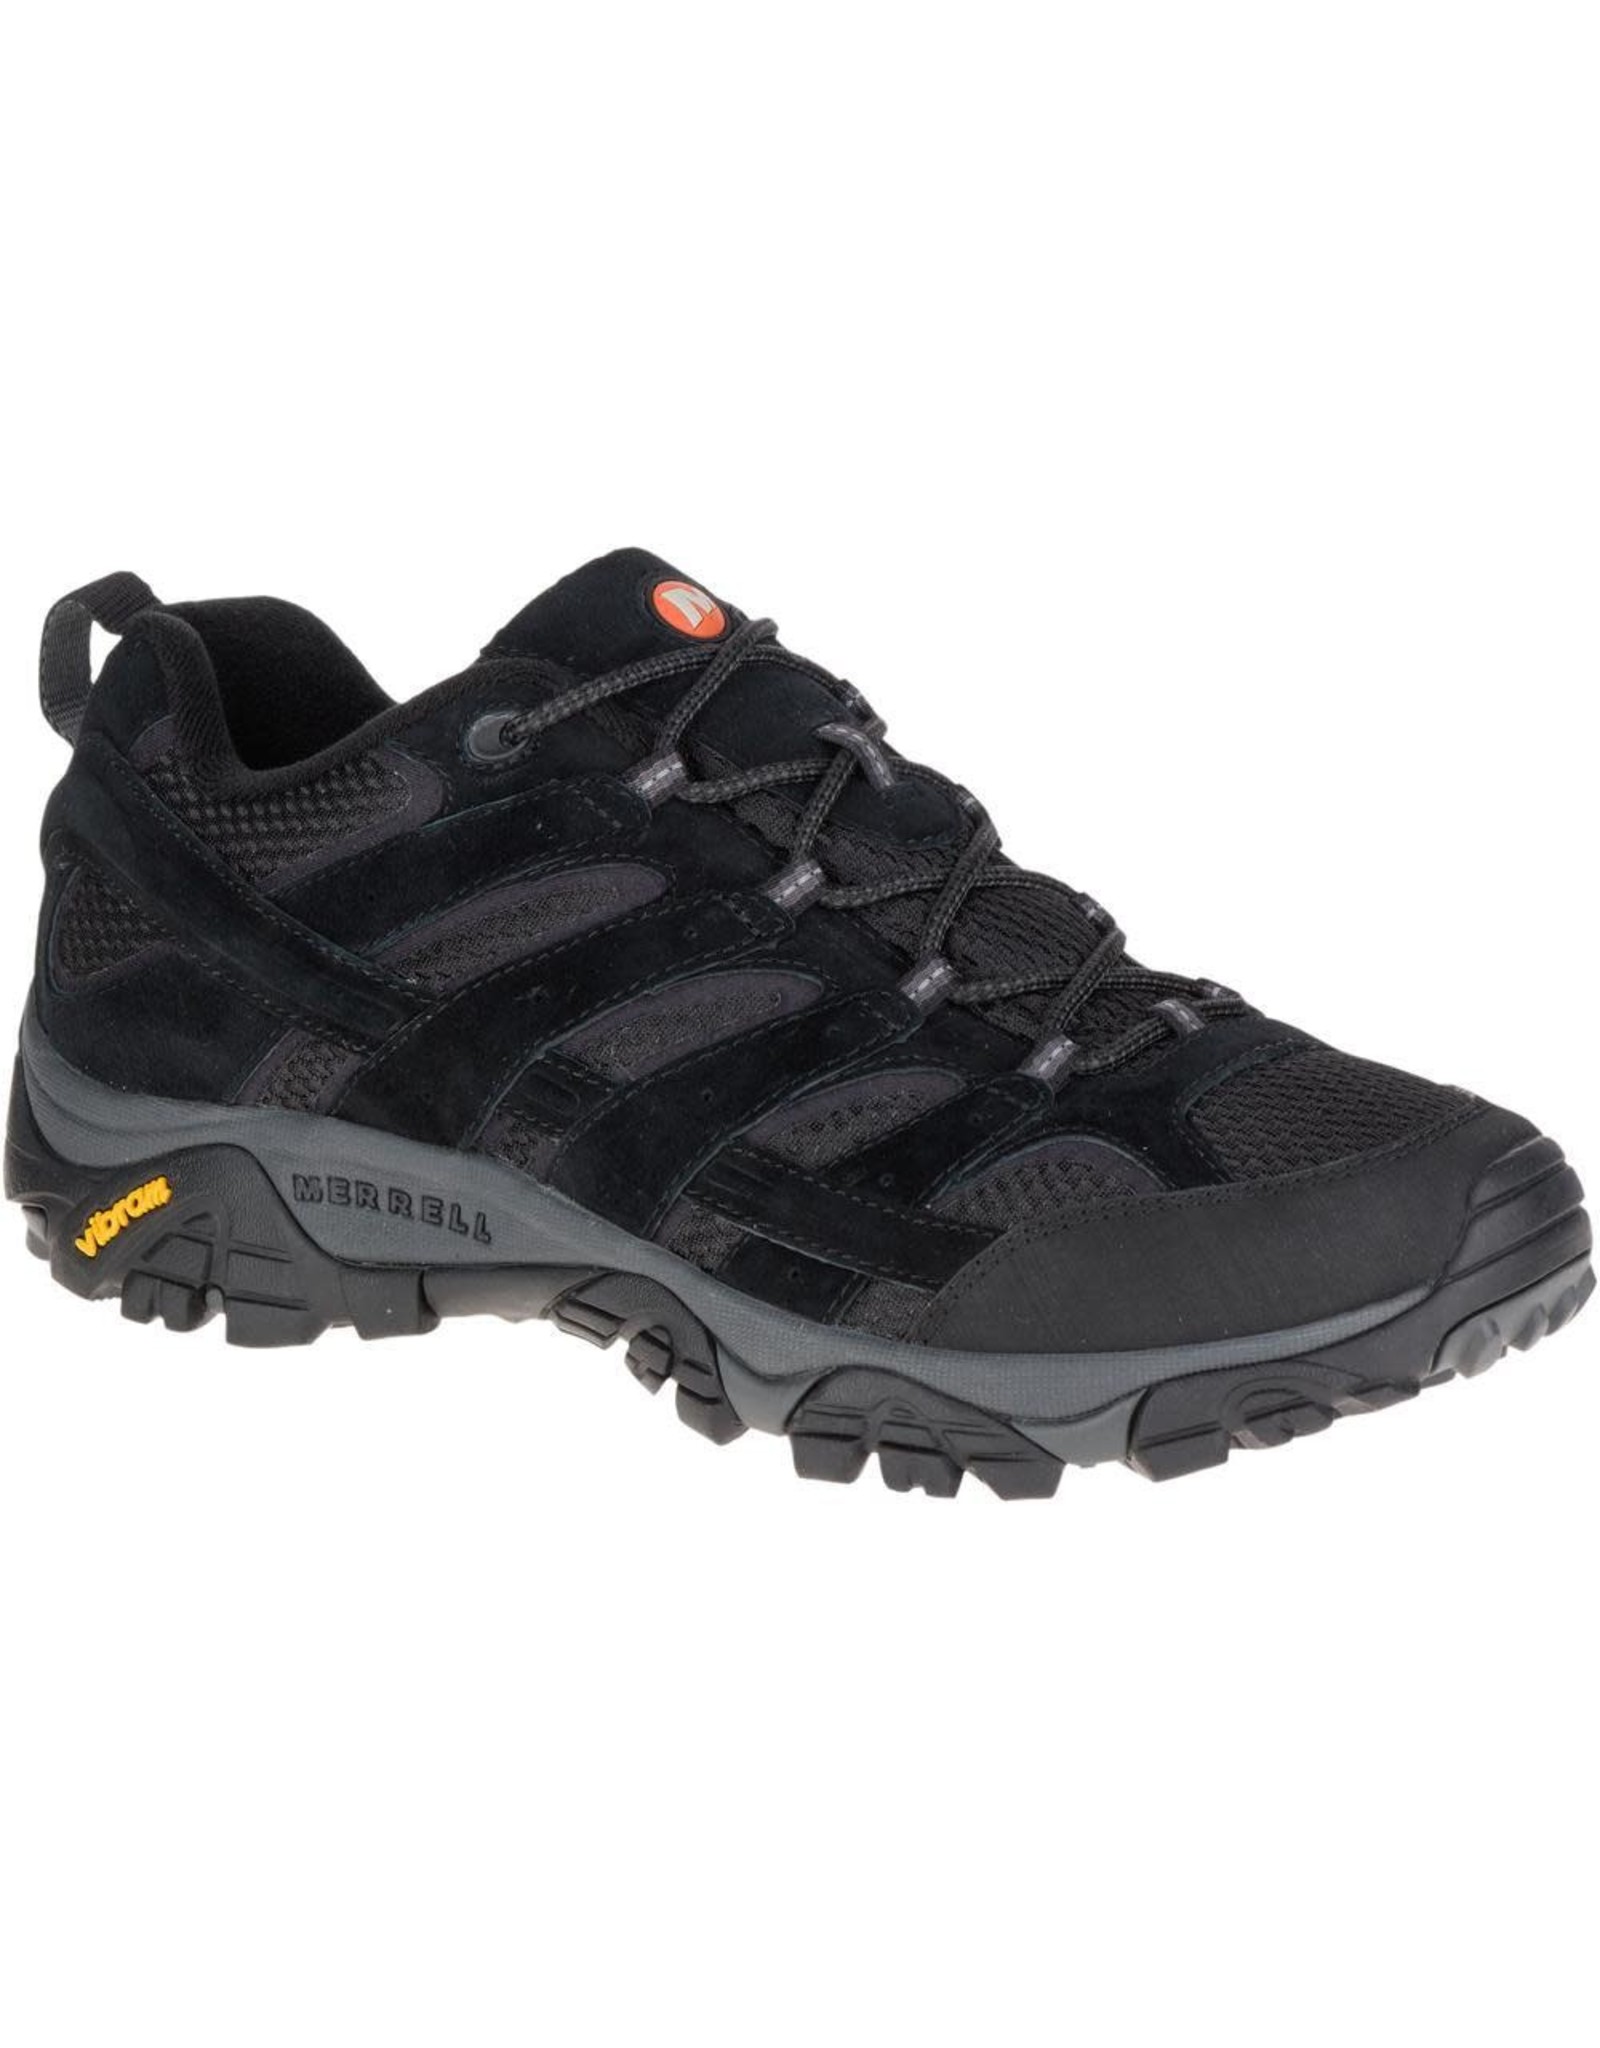 Merrell Men's Moab 2 J06017 Vent Hiking Shoes